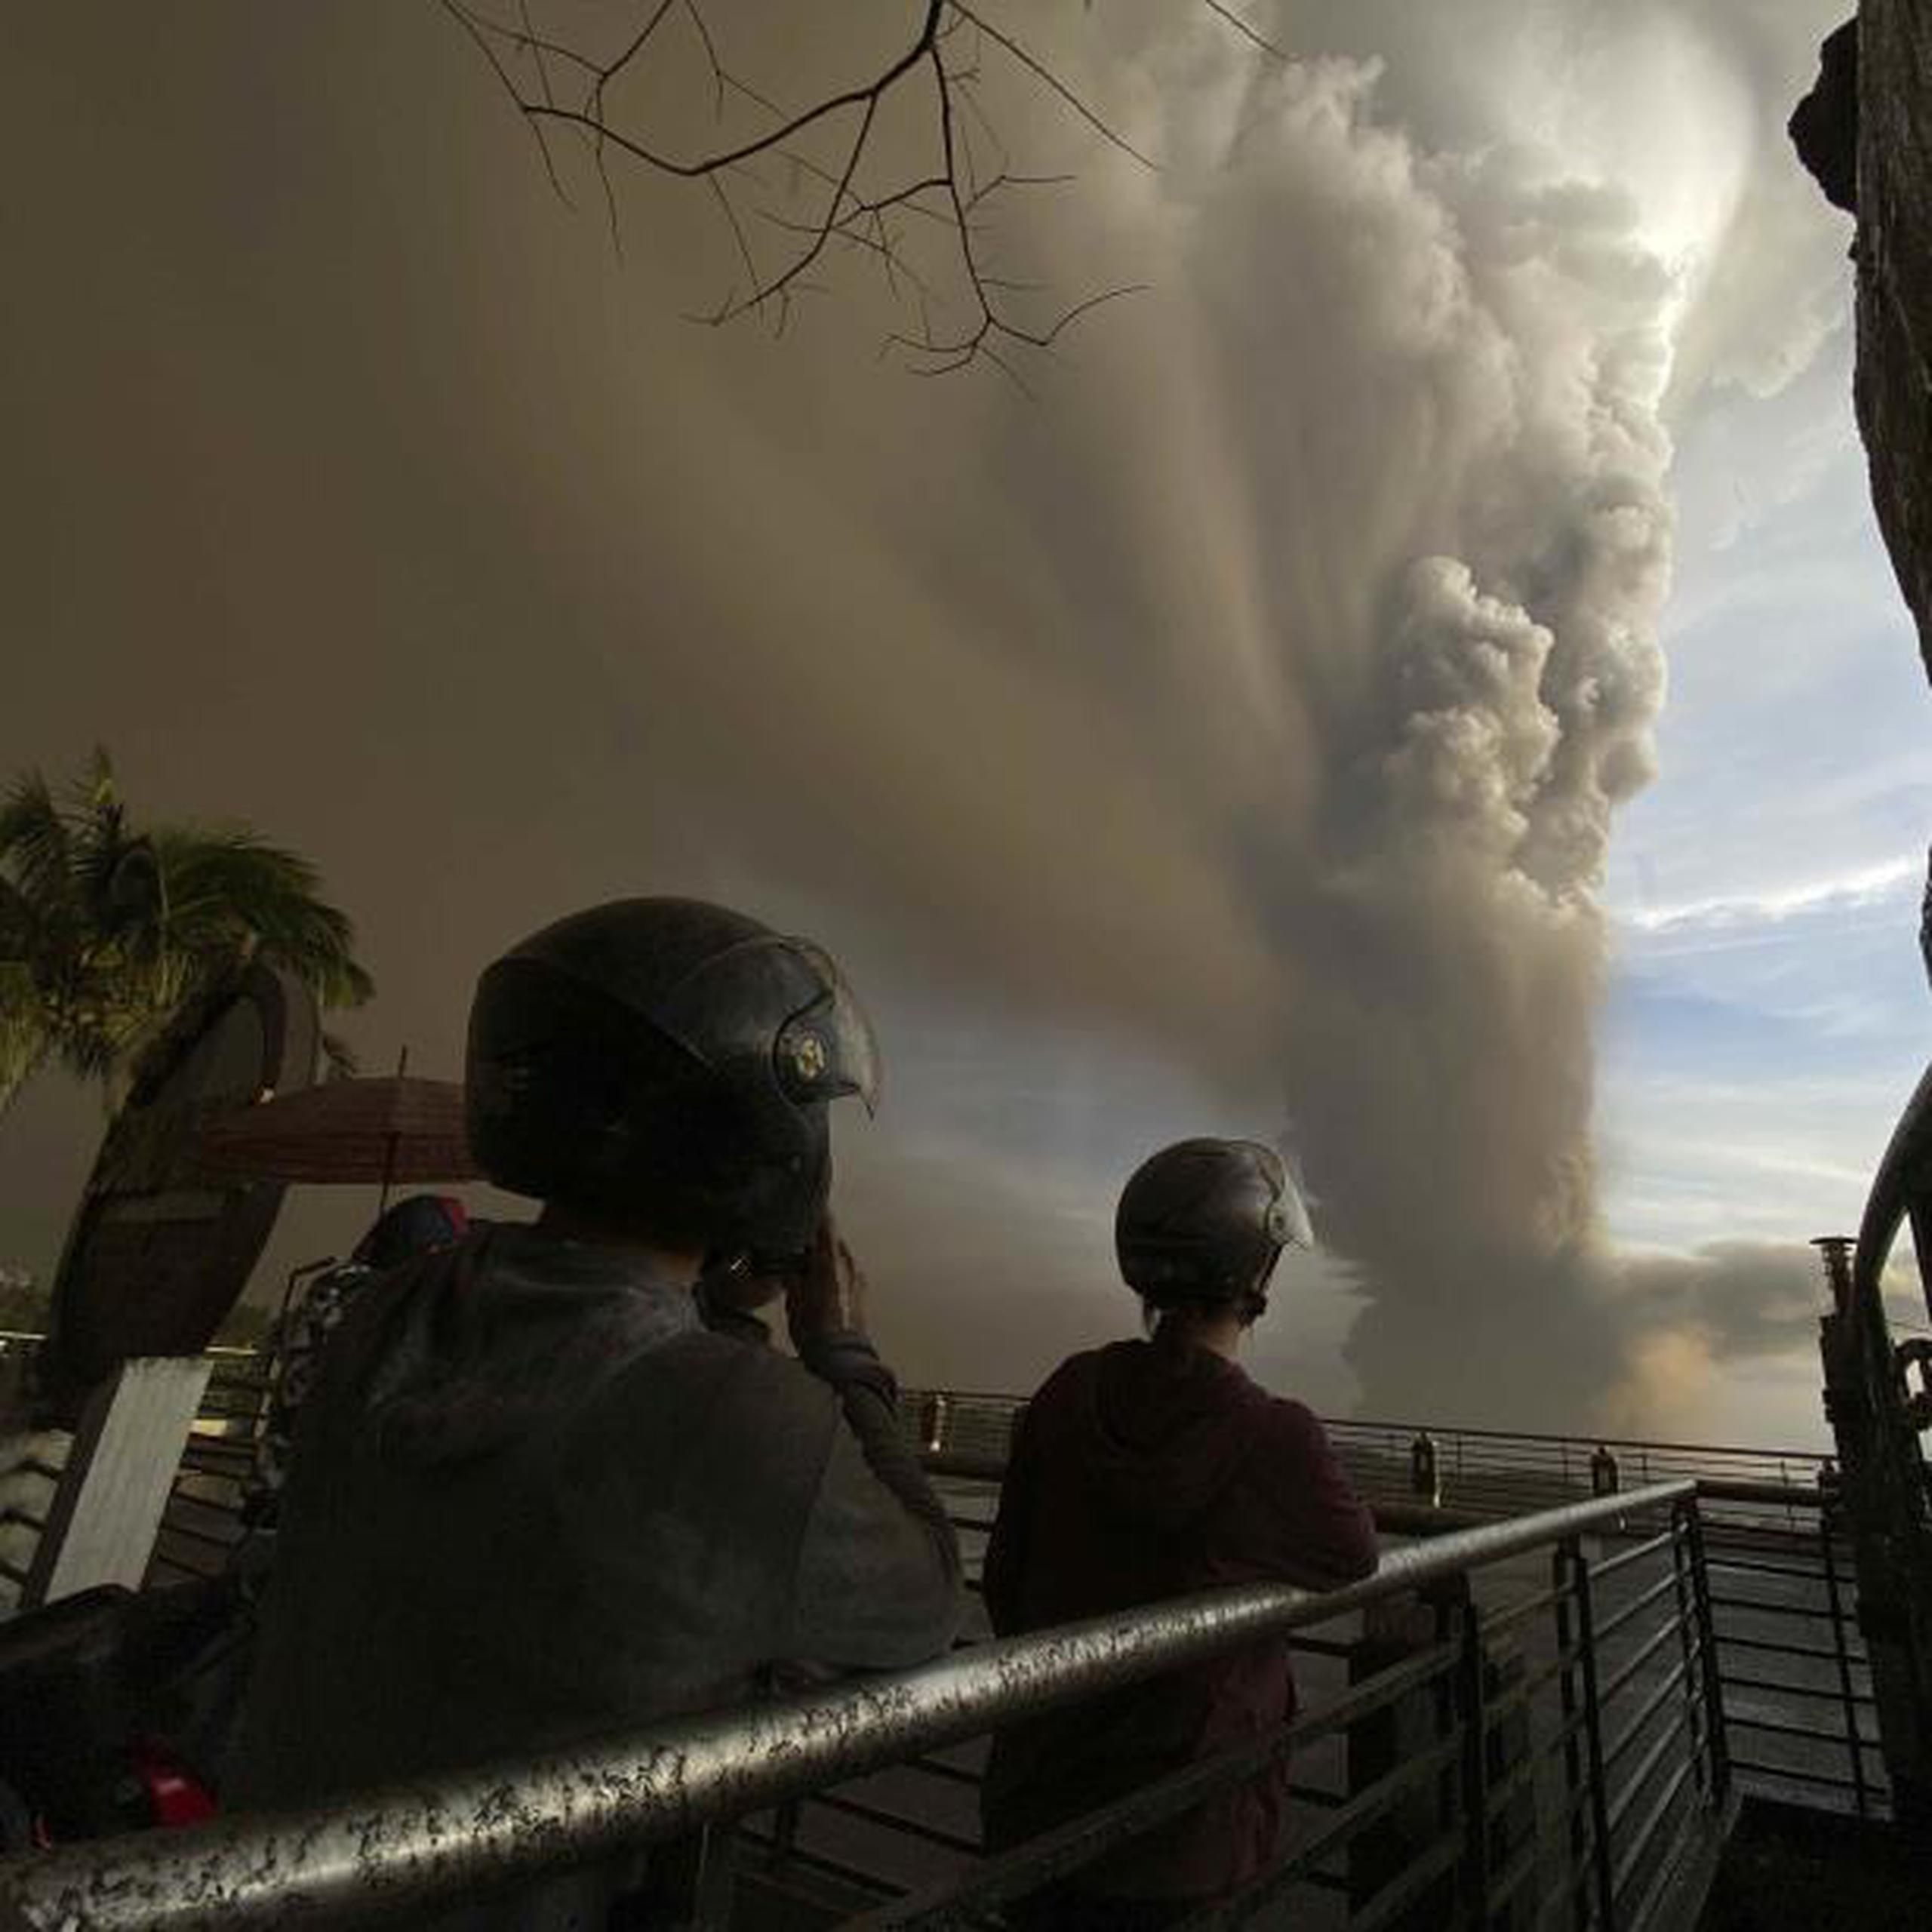 Los expertos advirtieron que la erupción podría empeorar y se hicieron planes para evacuar a cientos de miles de personas más. (AP)